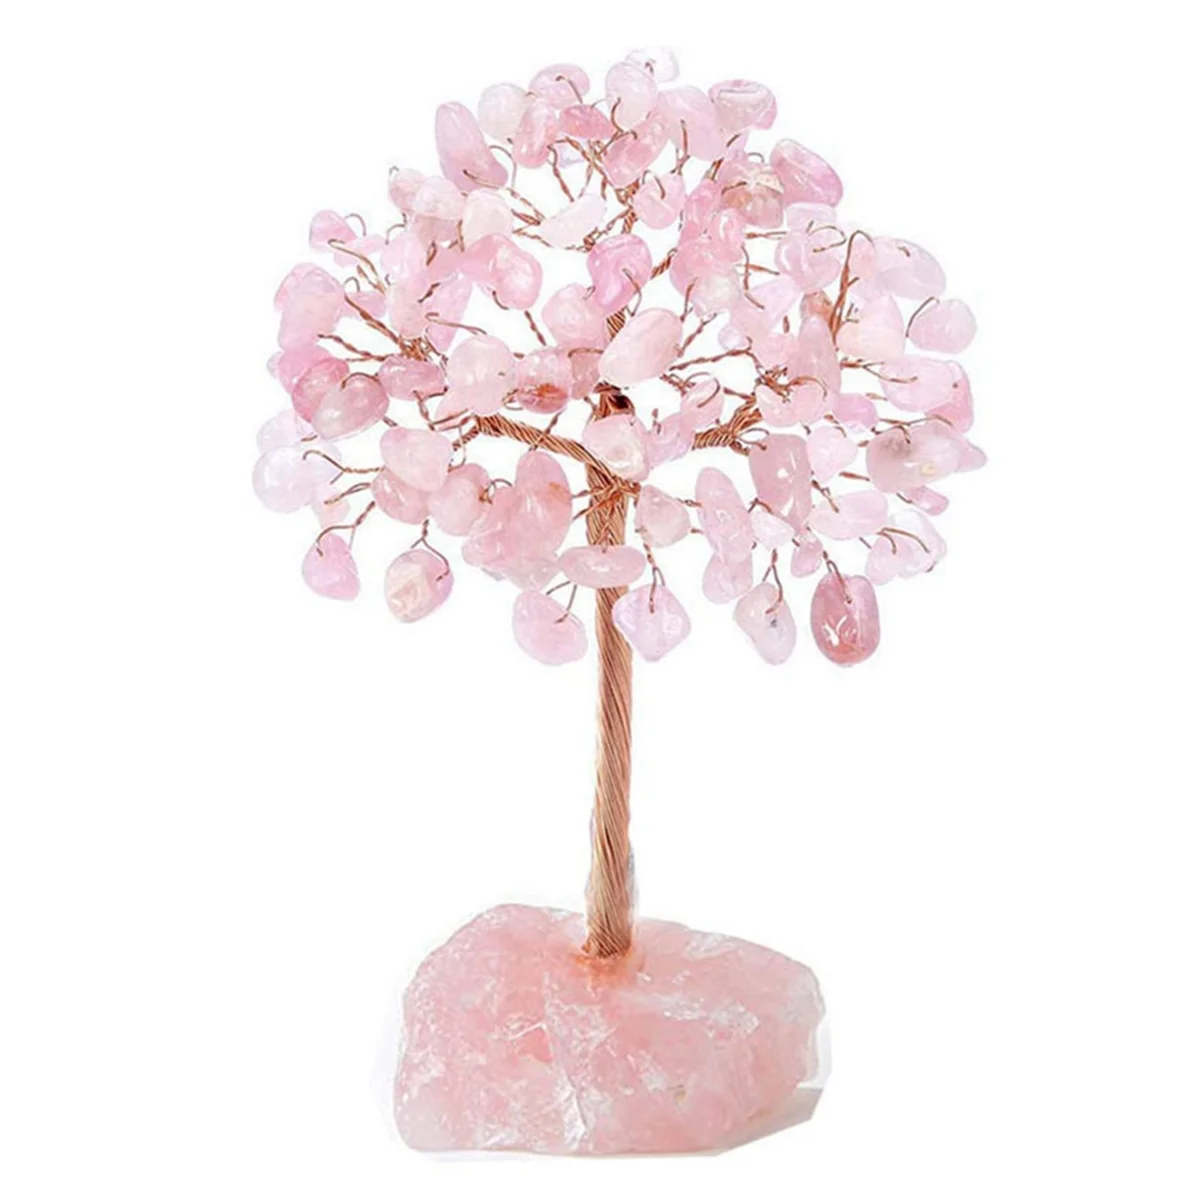 

Розовый кварц, хрустальное дерево, искусственный кристалл и лечебный камень, хрустальный камень, дерево, драгоценный камень, подарки ко дню Святого Валентина